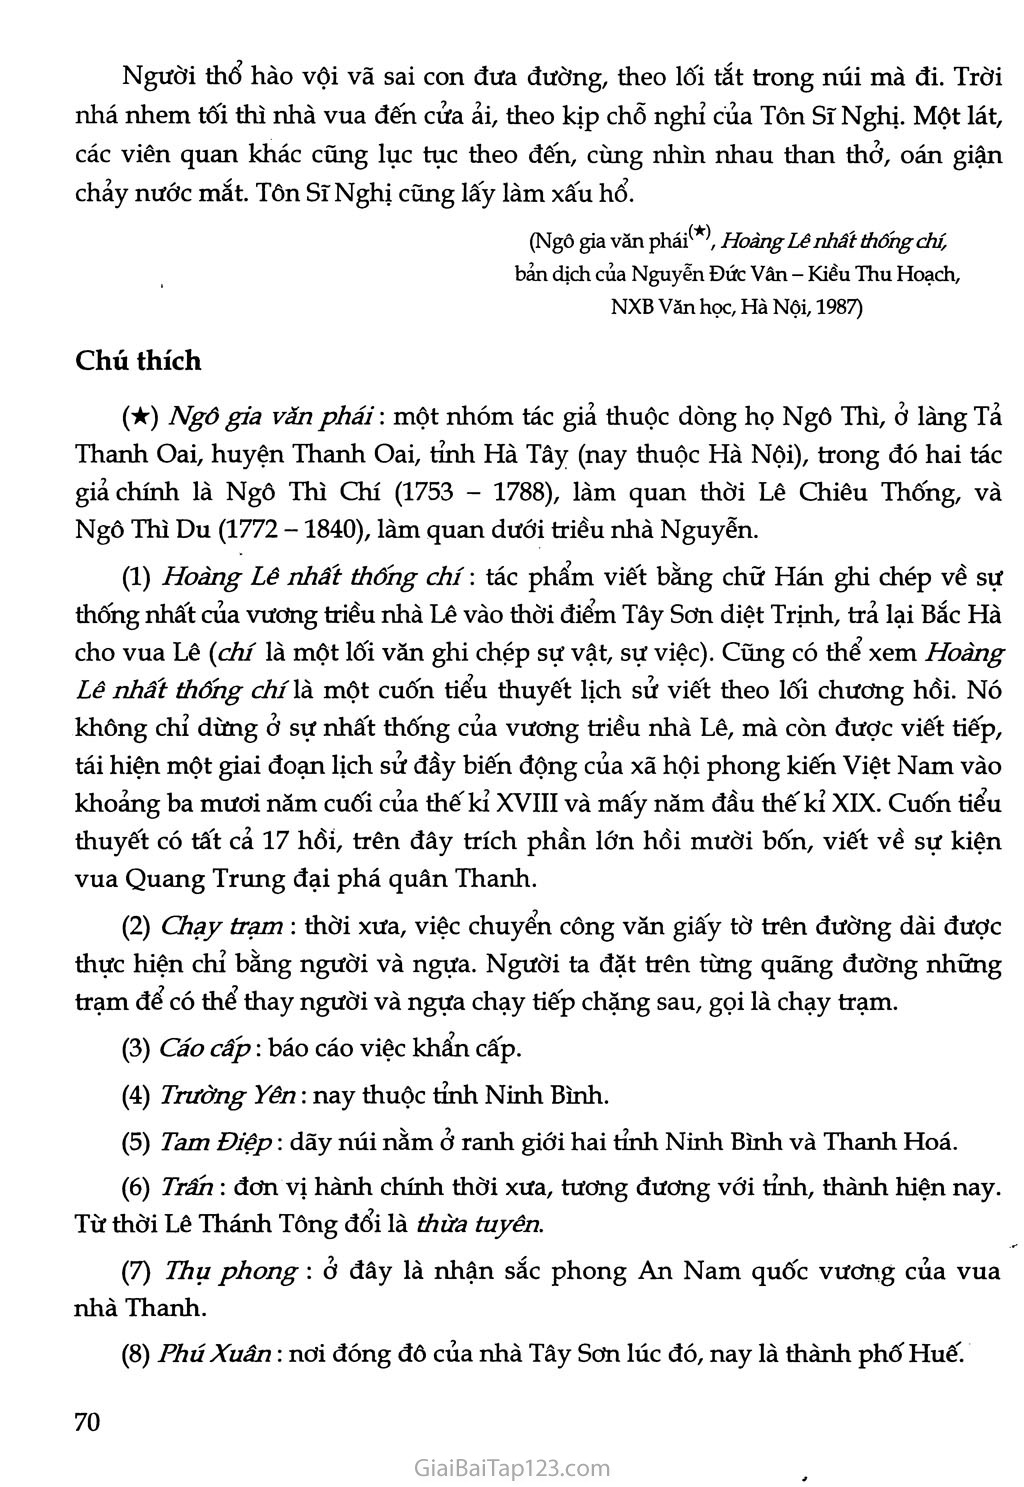 Hoàng Lê nhất thống chí - Hồi thứ mười bốn (trích) trang 7